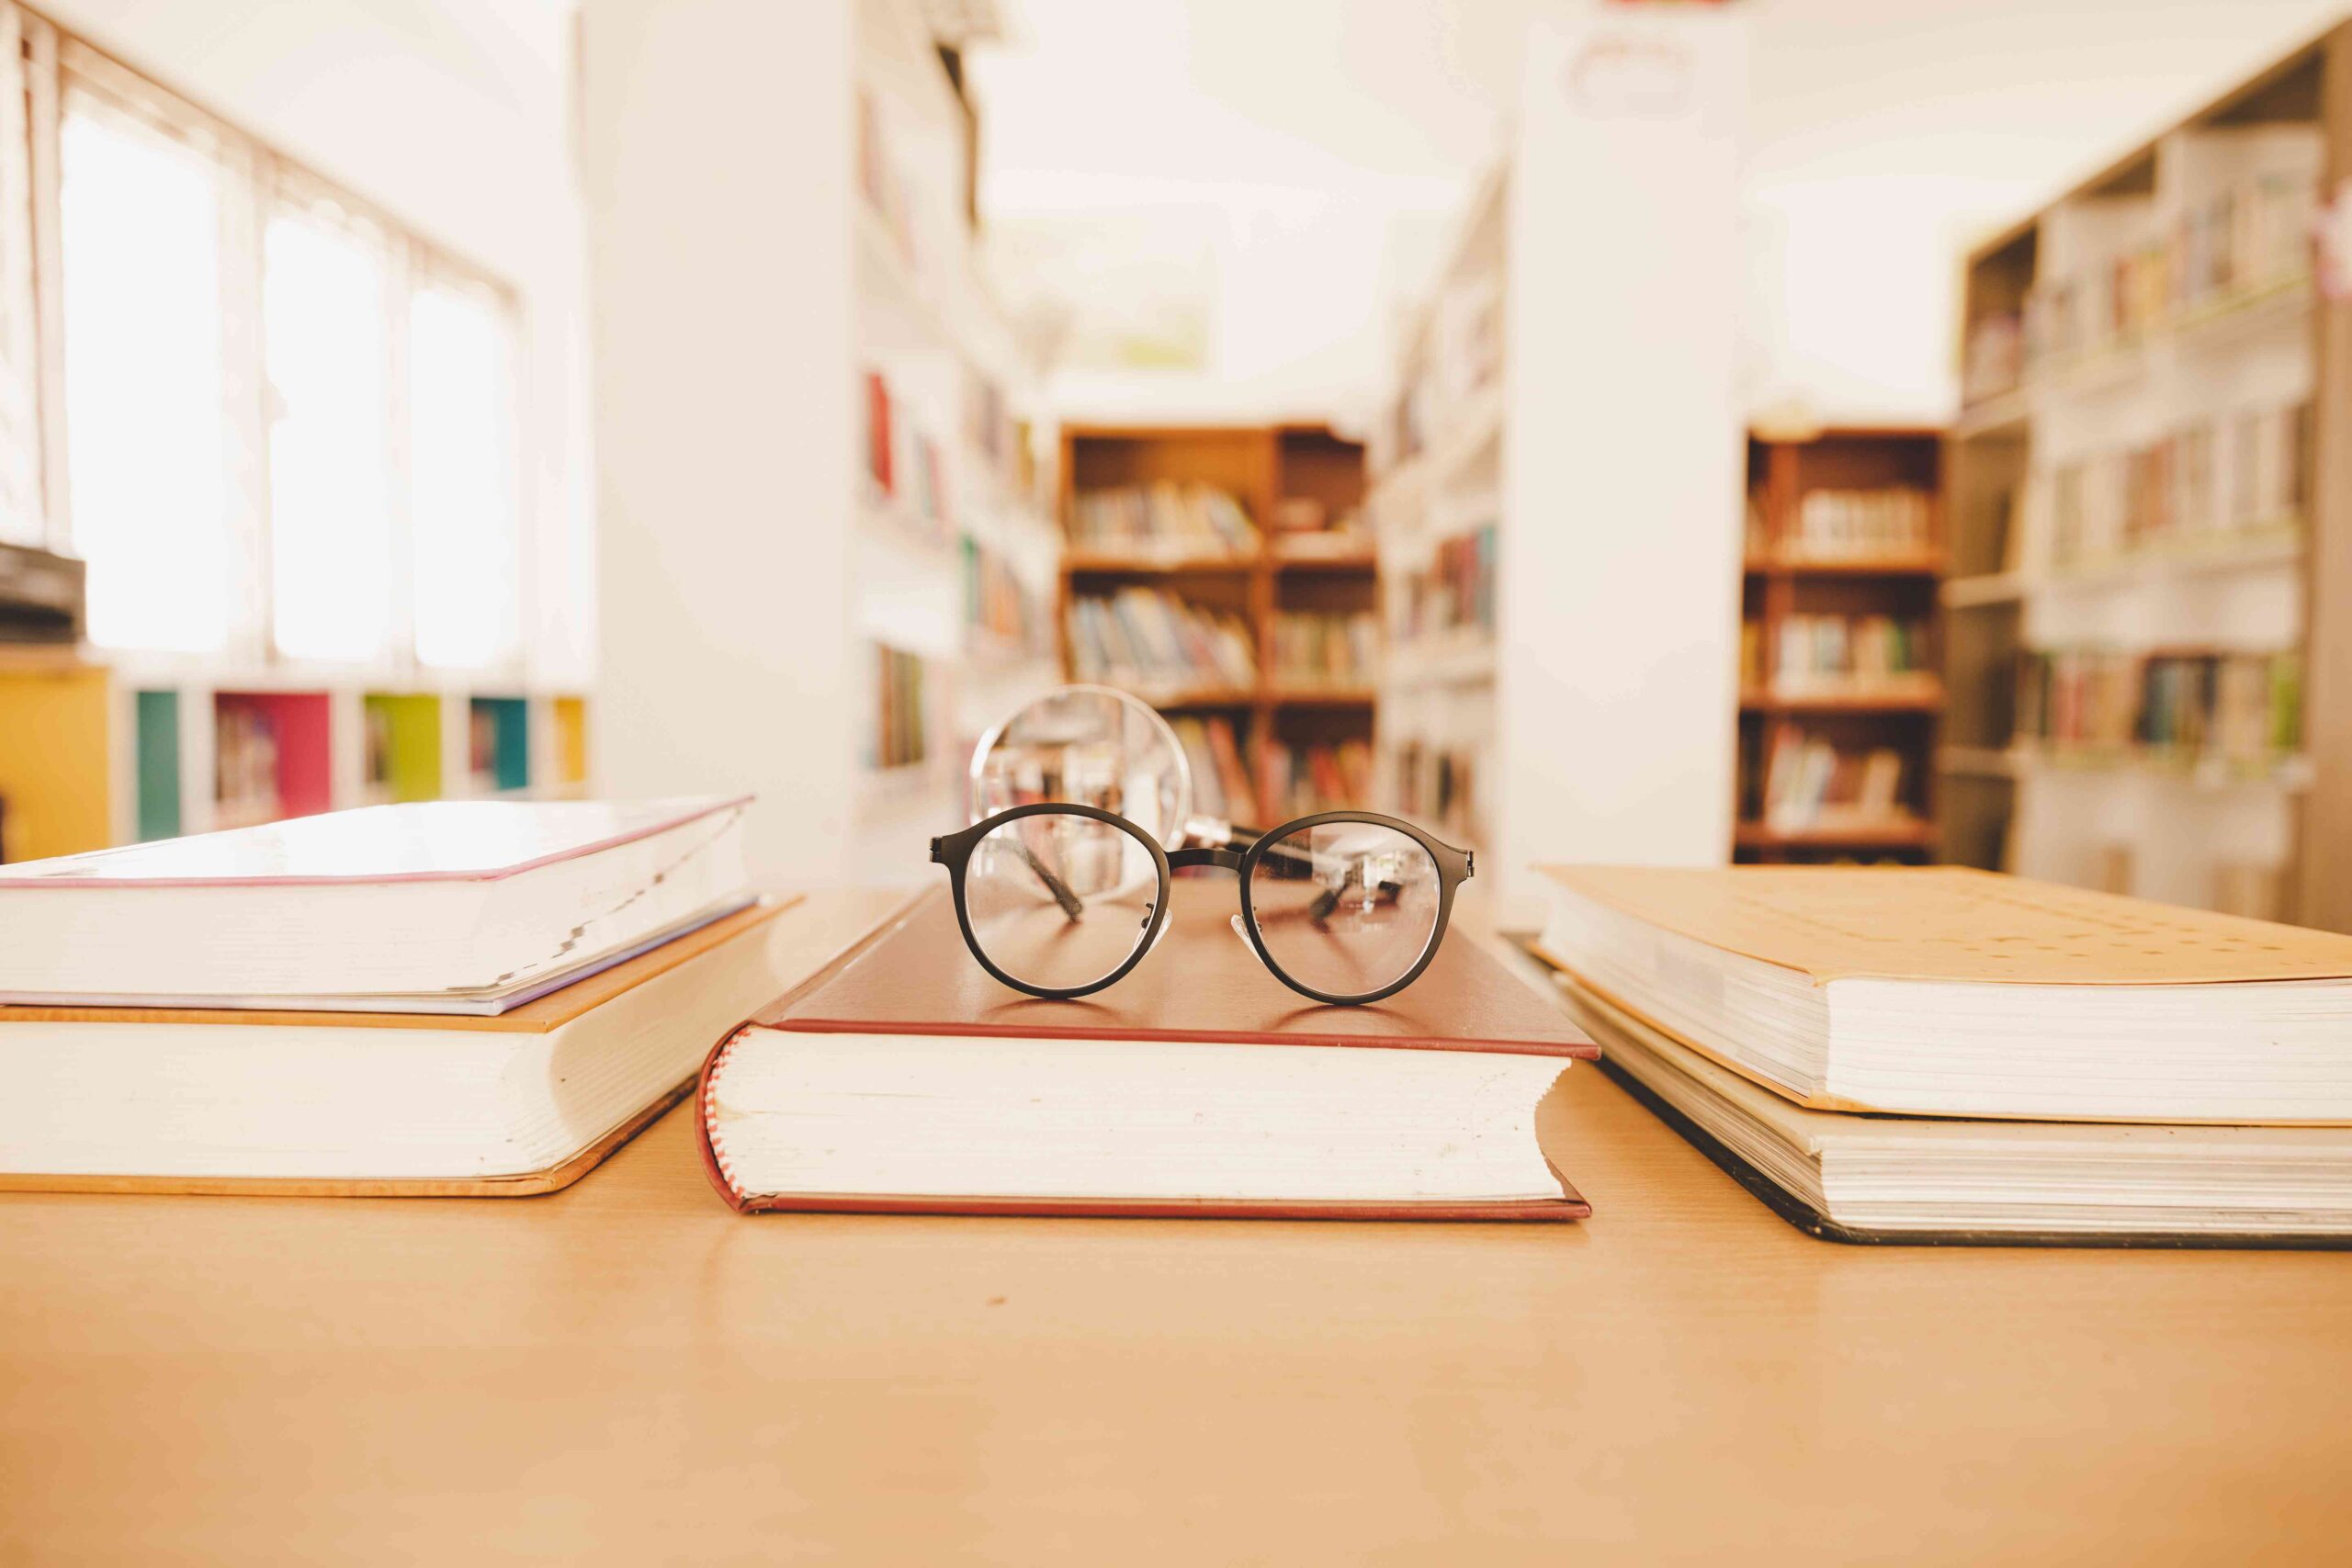 Foto von Büchern auf einem Tisch, daruaf eine Brille. Im Hintergrund Bibliothesräume.